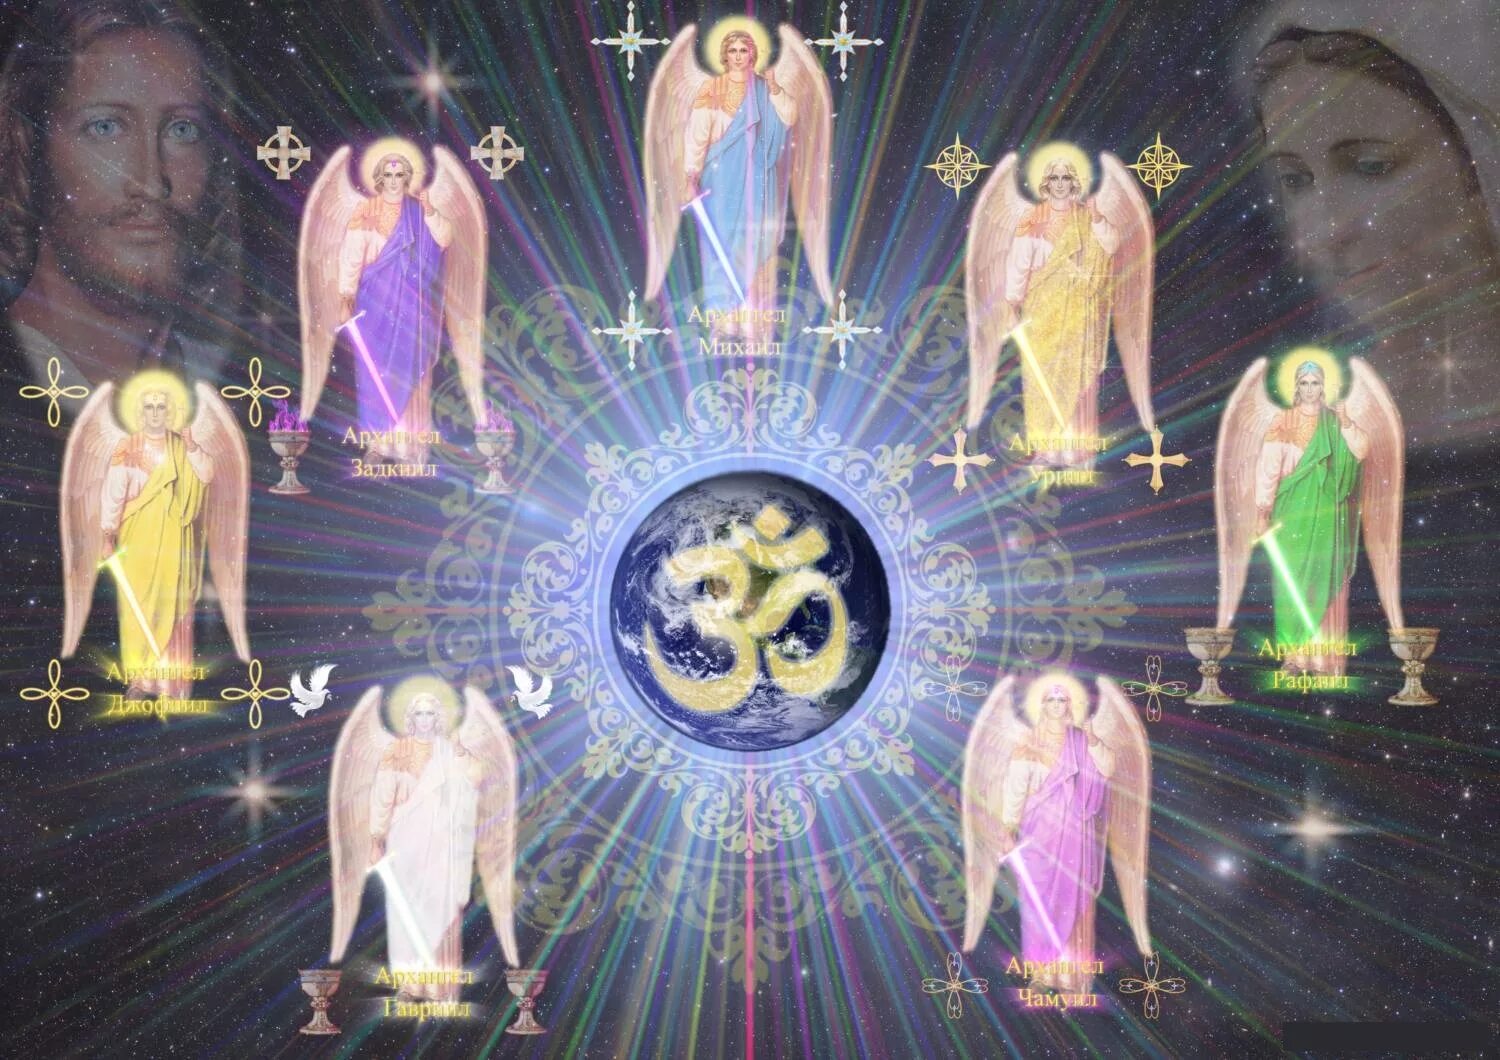 Человек 7 луча. Вознесенные владыки учителя иерархия света. Семь лучей света Архангелов. Высшие силы Вселенной. Семь лучей Бога семь божественных энергий.